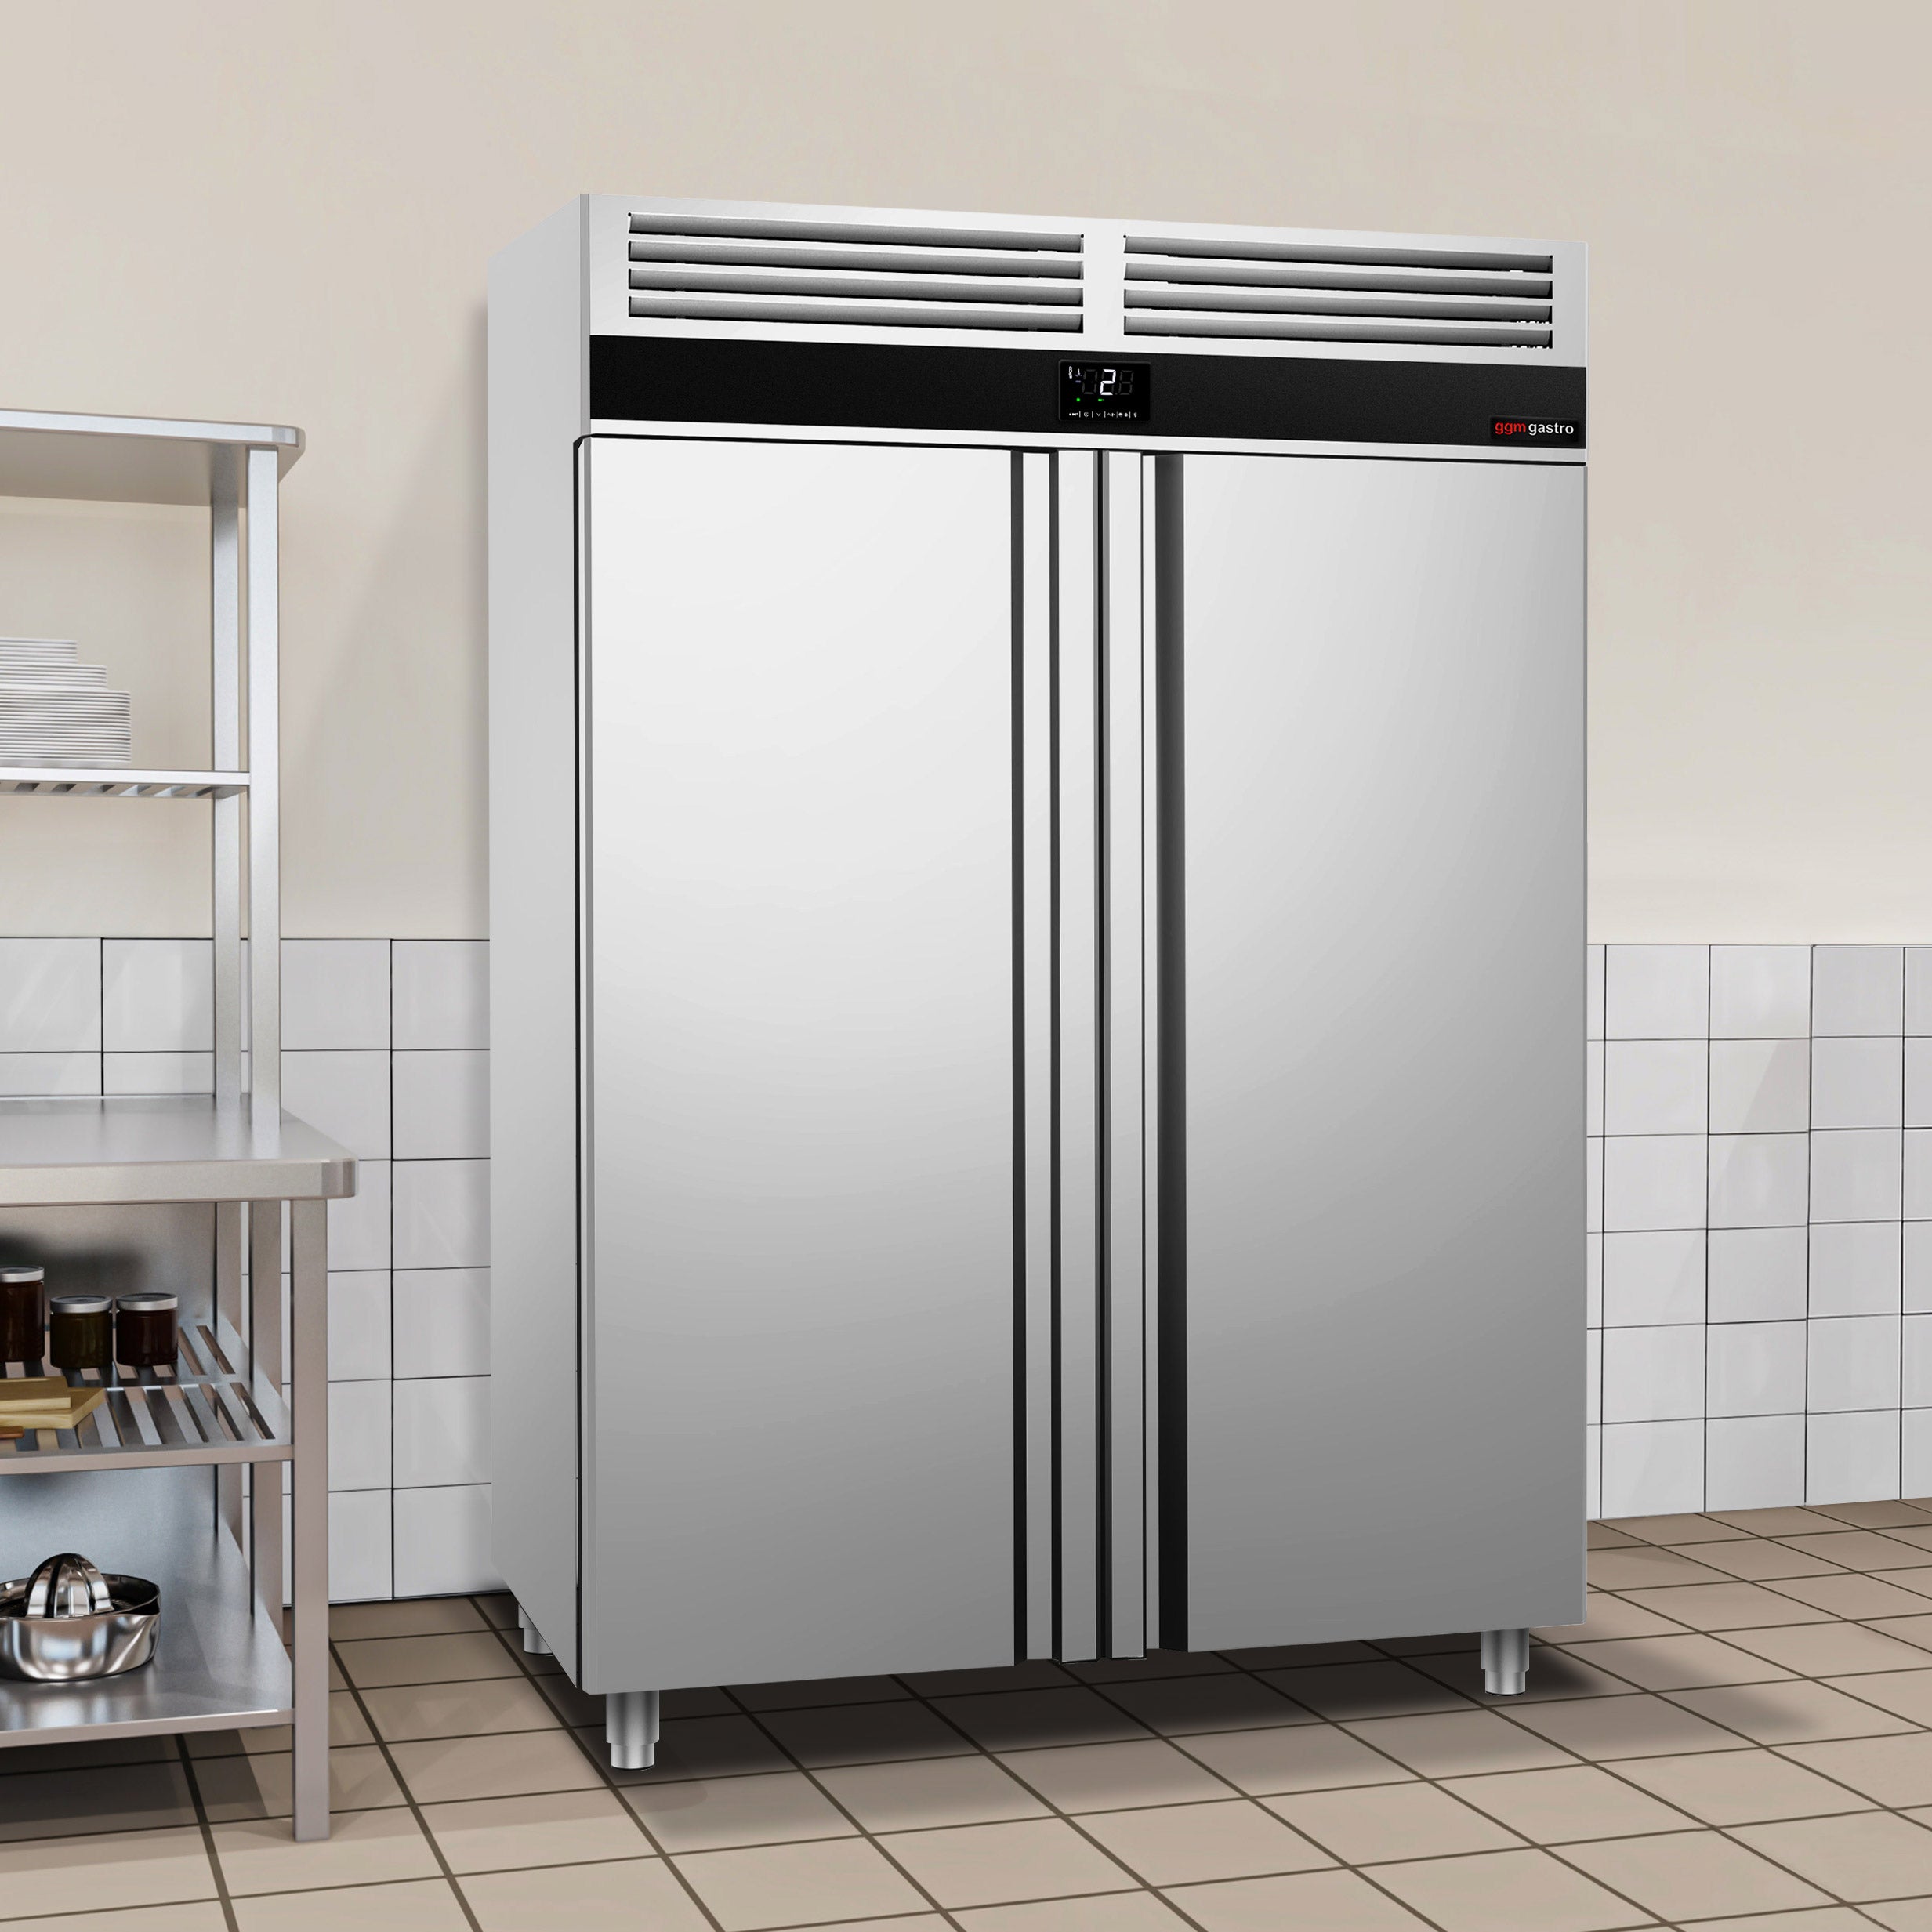 Køleskab - 0,7 x 0,81 m - med 2  døre i rustfrit stål